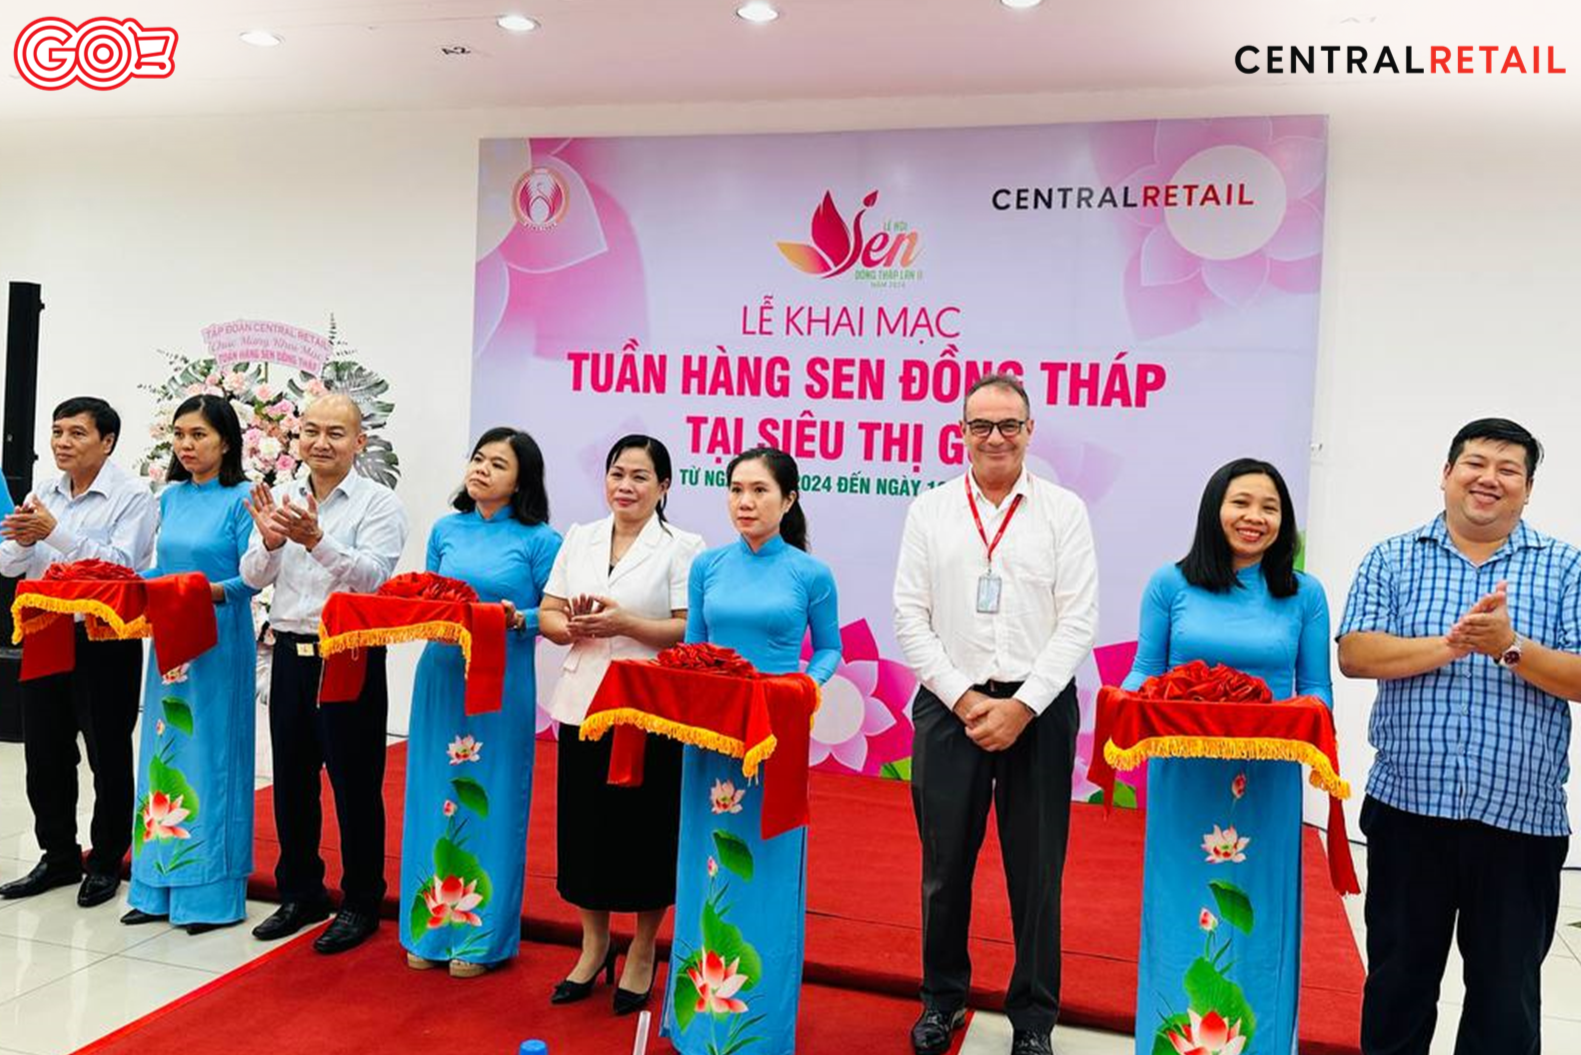 Central Retail Việt Nam phối hợp Sở Công Thương tỉnh Đồng Tháp lần đầu tổ chức sự kiện Tuần hàng sen Đồng Tháp